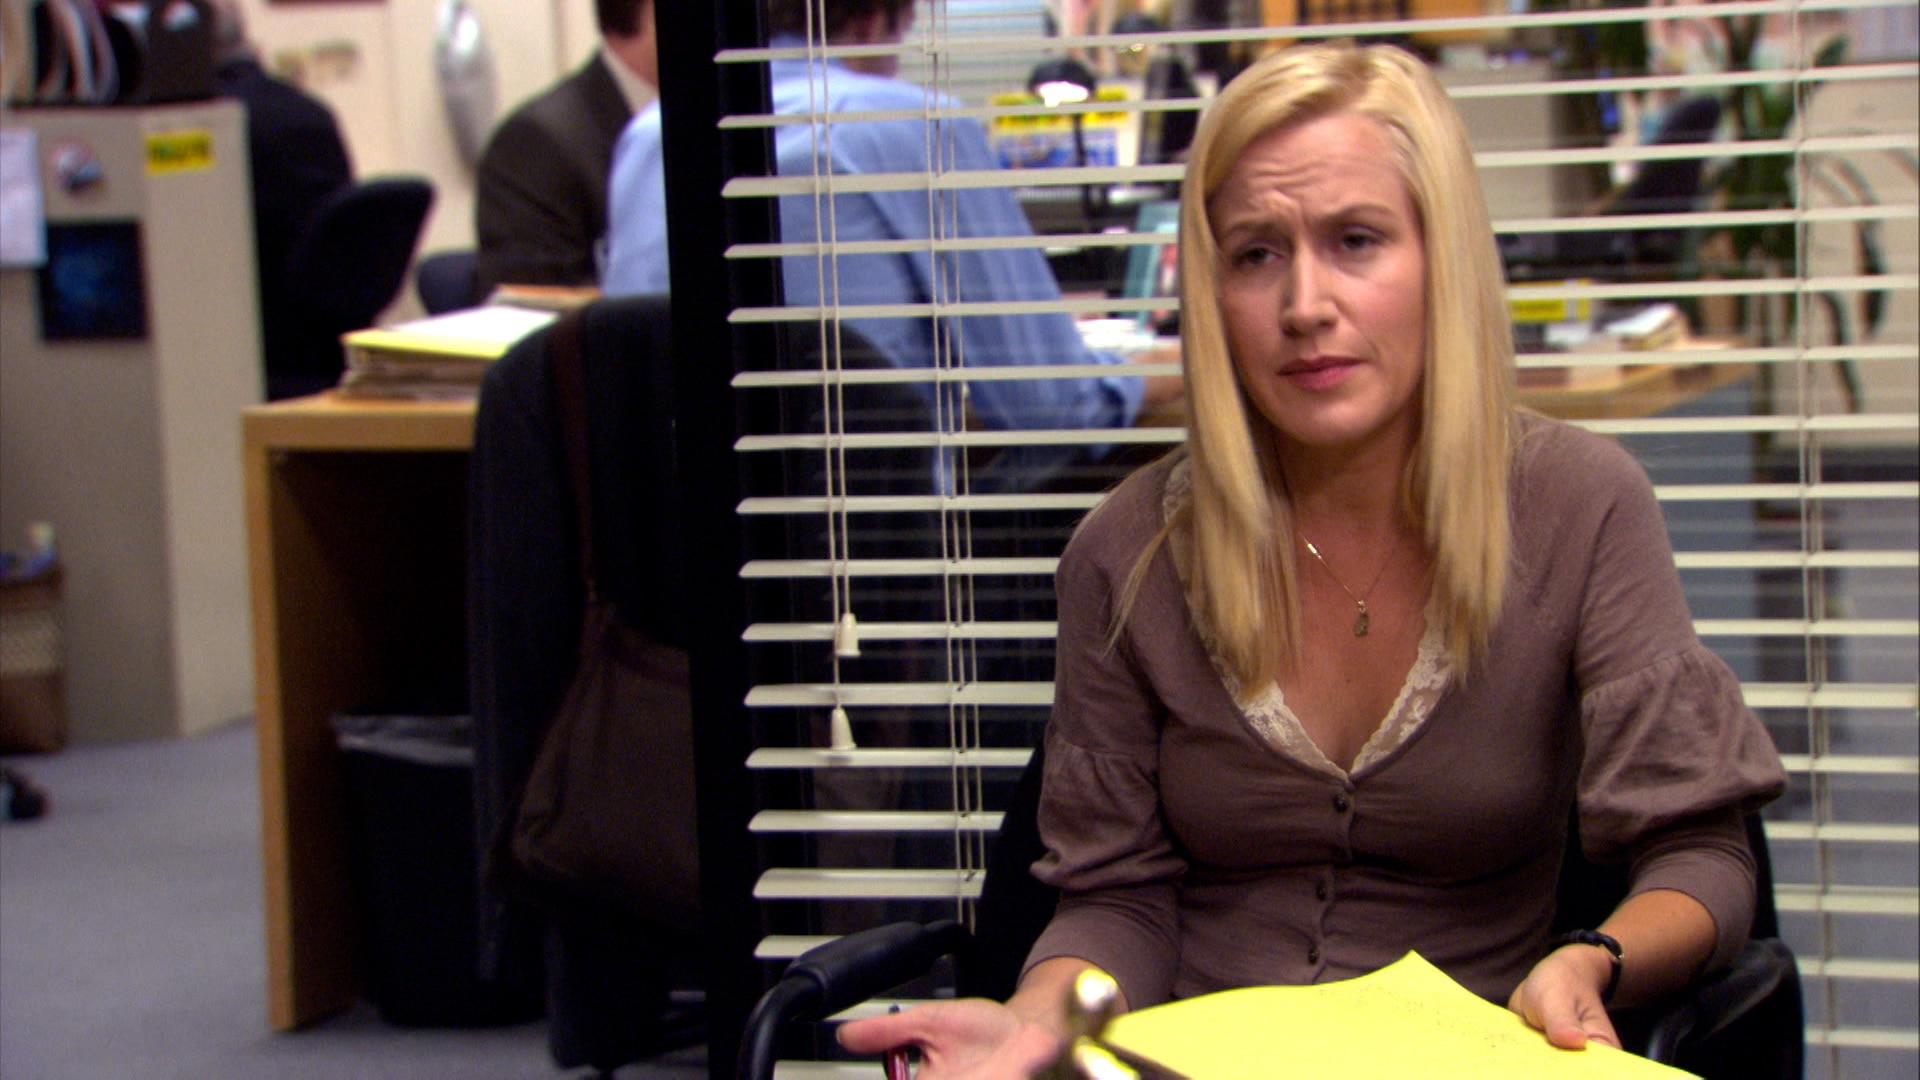 Watch The Office Season 4, Episode 4: Dunder Mifflin Infinity Part 2